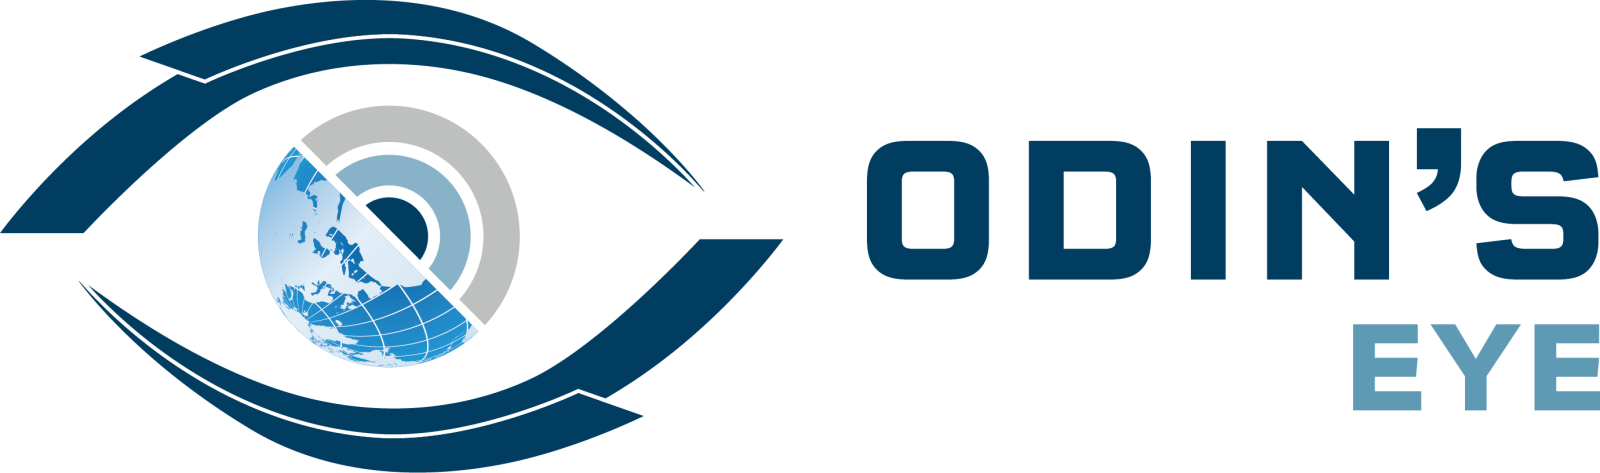 OHB_logo_odins_eye_rgb_0